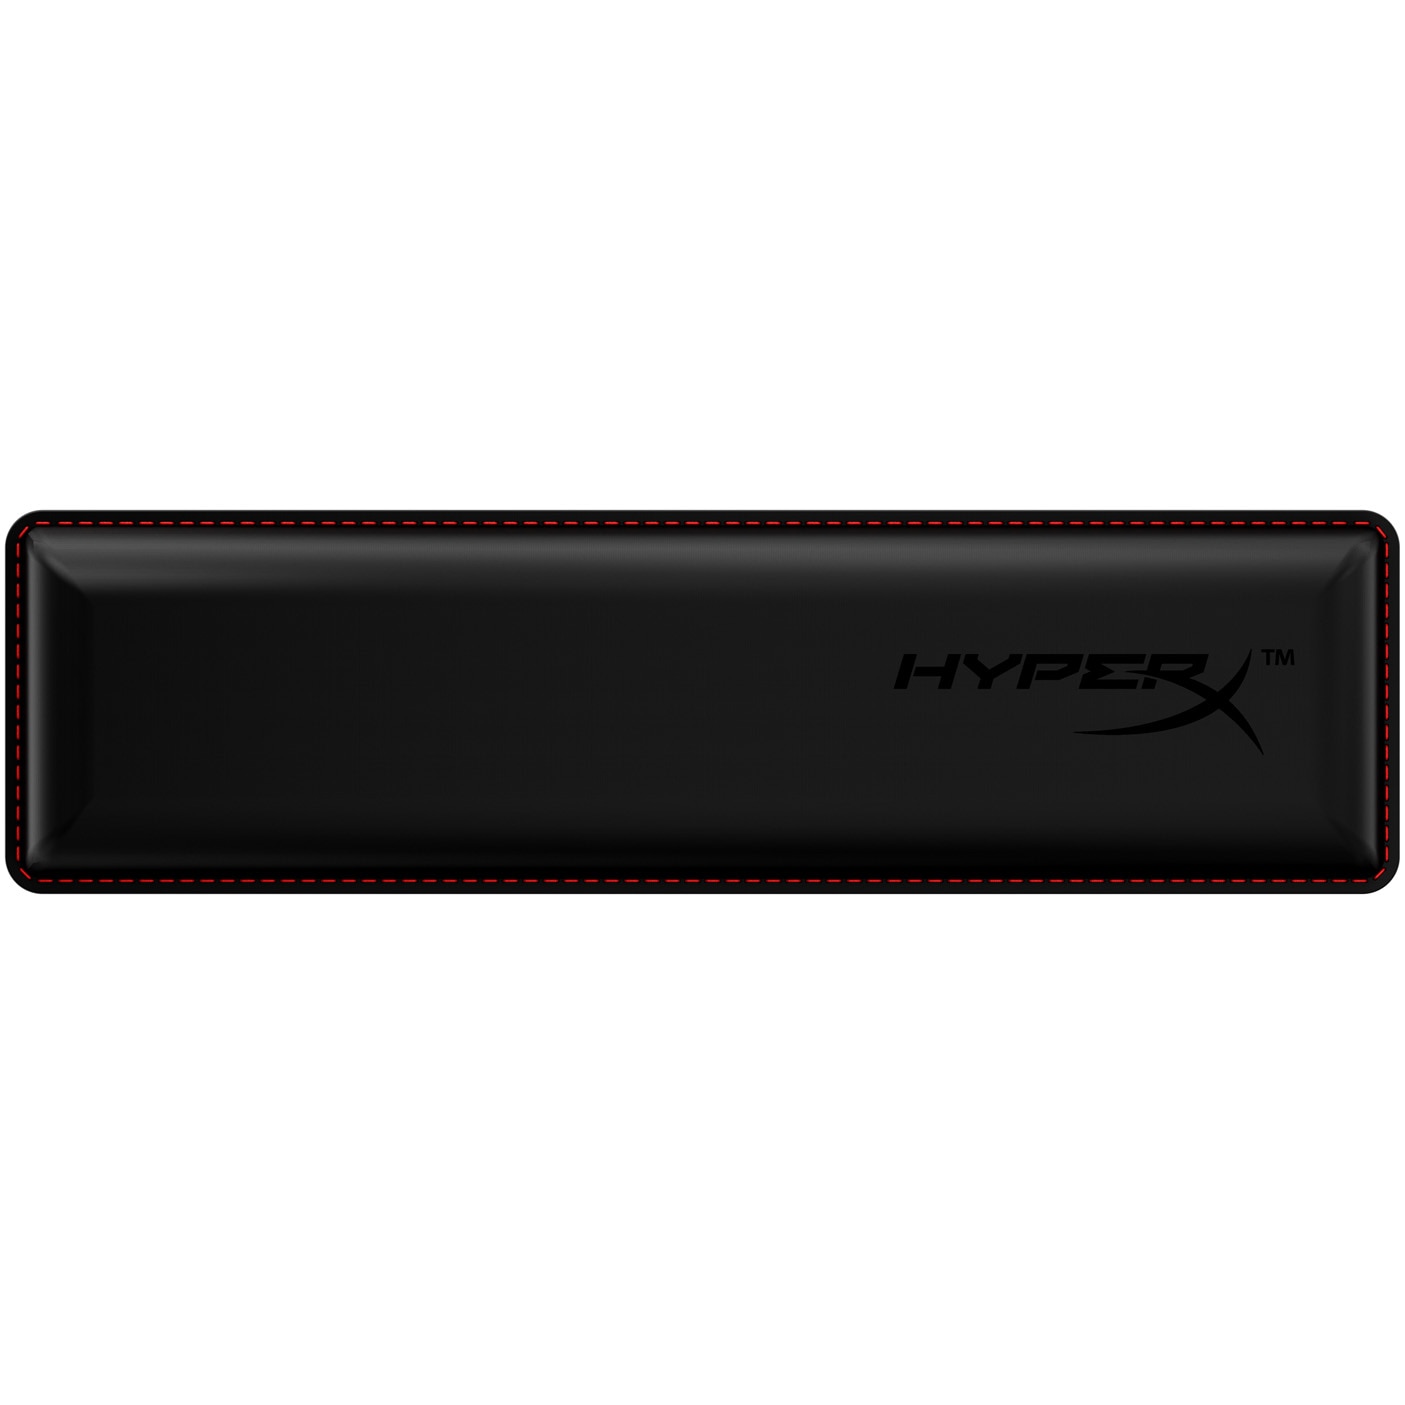 Fotografie Suport pentru maini HyperX Wrist Rest pentru tastaturi cu format compact 60/65%, design ergonomic, spuma cu memorie si cooling gel, grip anti-slip, negru